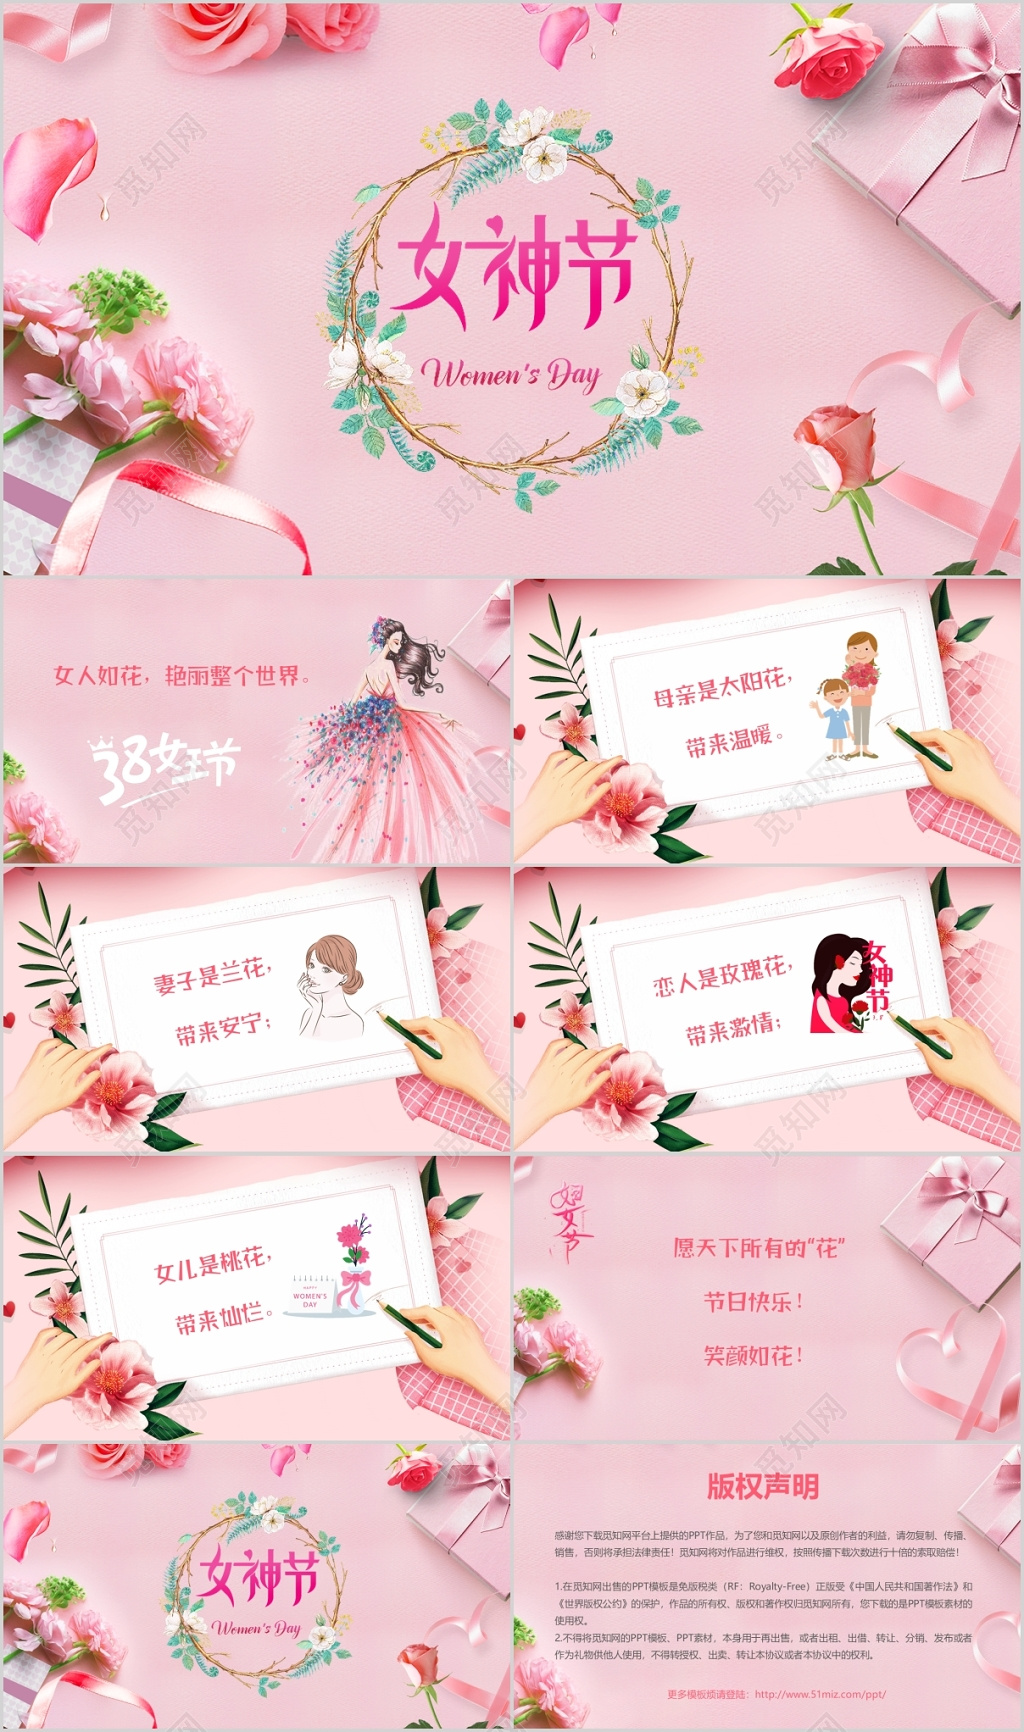 粉黄色线性女神手绘妇女节分享中文贺卡 - 模板 - Canva可画